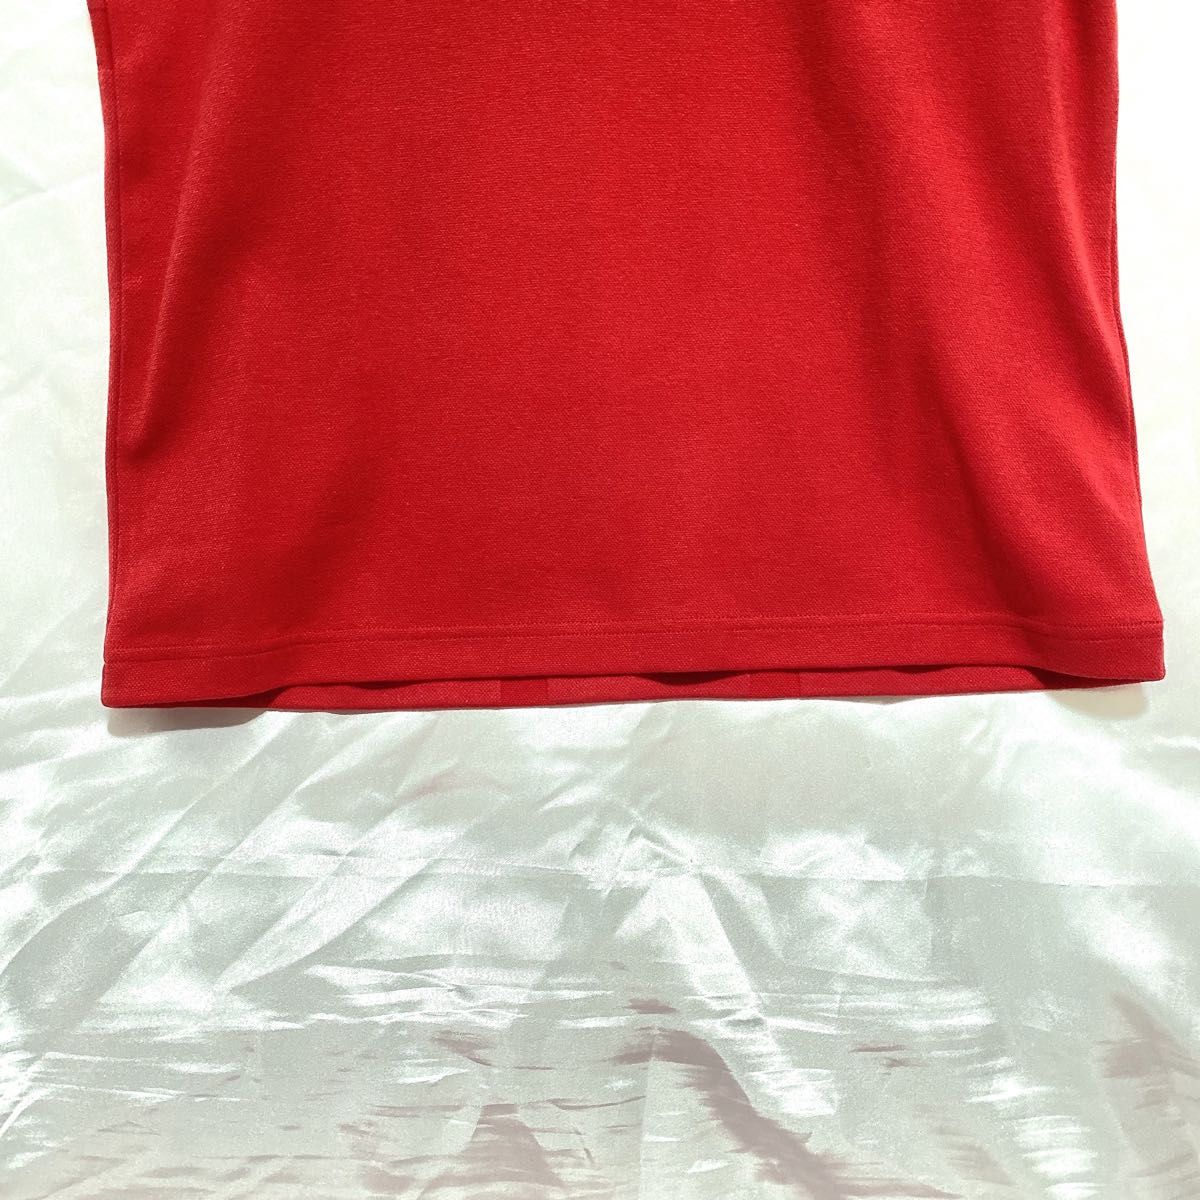 【新品 未使用】フレッドペリー ポロシャツ ユニオンジャック ツインティップ 半袖シャツ ゴルフウェア テニス メンズ